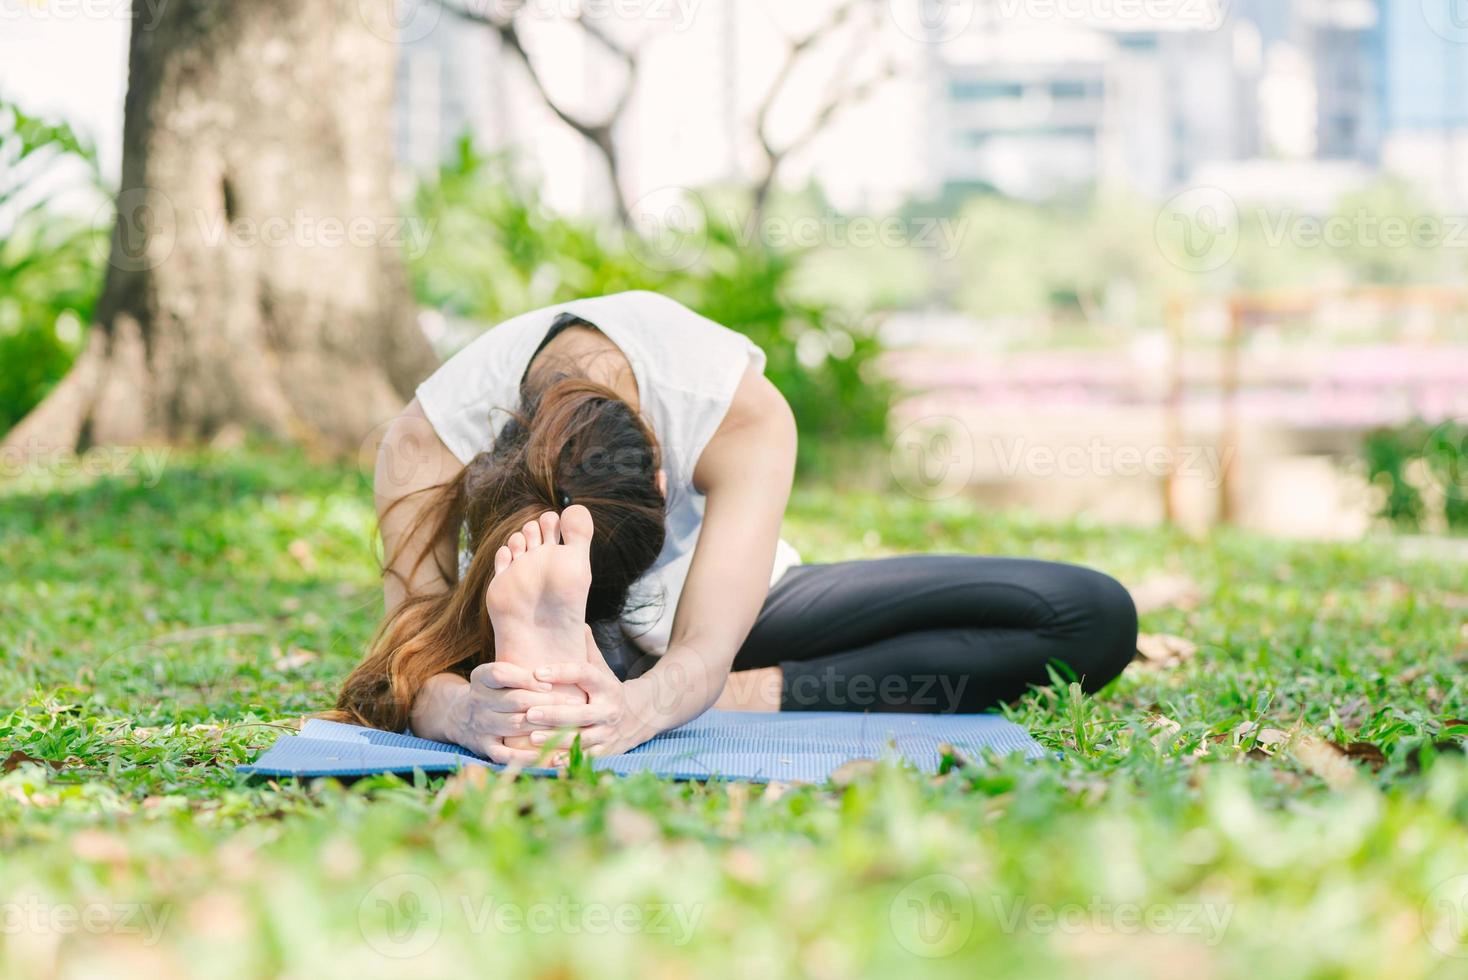 jovem mulher asiática ioga ao ar livre, mantenha a calma e medite enquanto pratica ioga para explorar a paz interior. ioga e meditação trazem bons benefícios para a saúde. esporte de ioga e conceito de estilo de vida saudável. foto